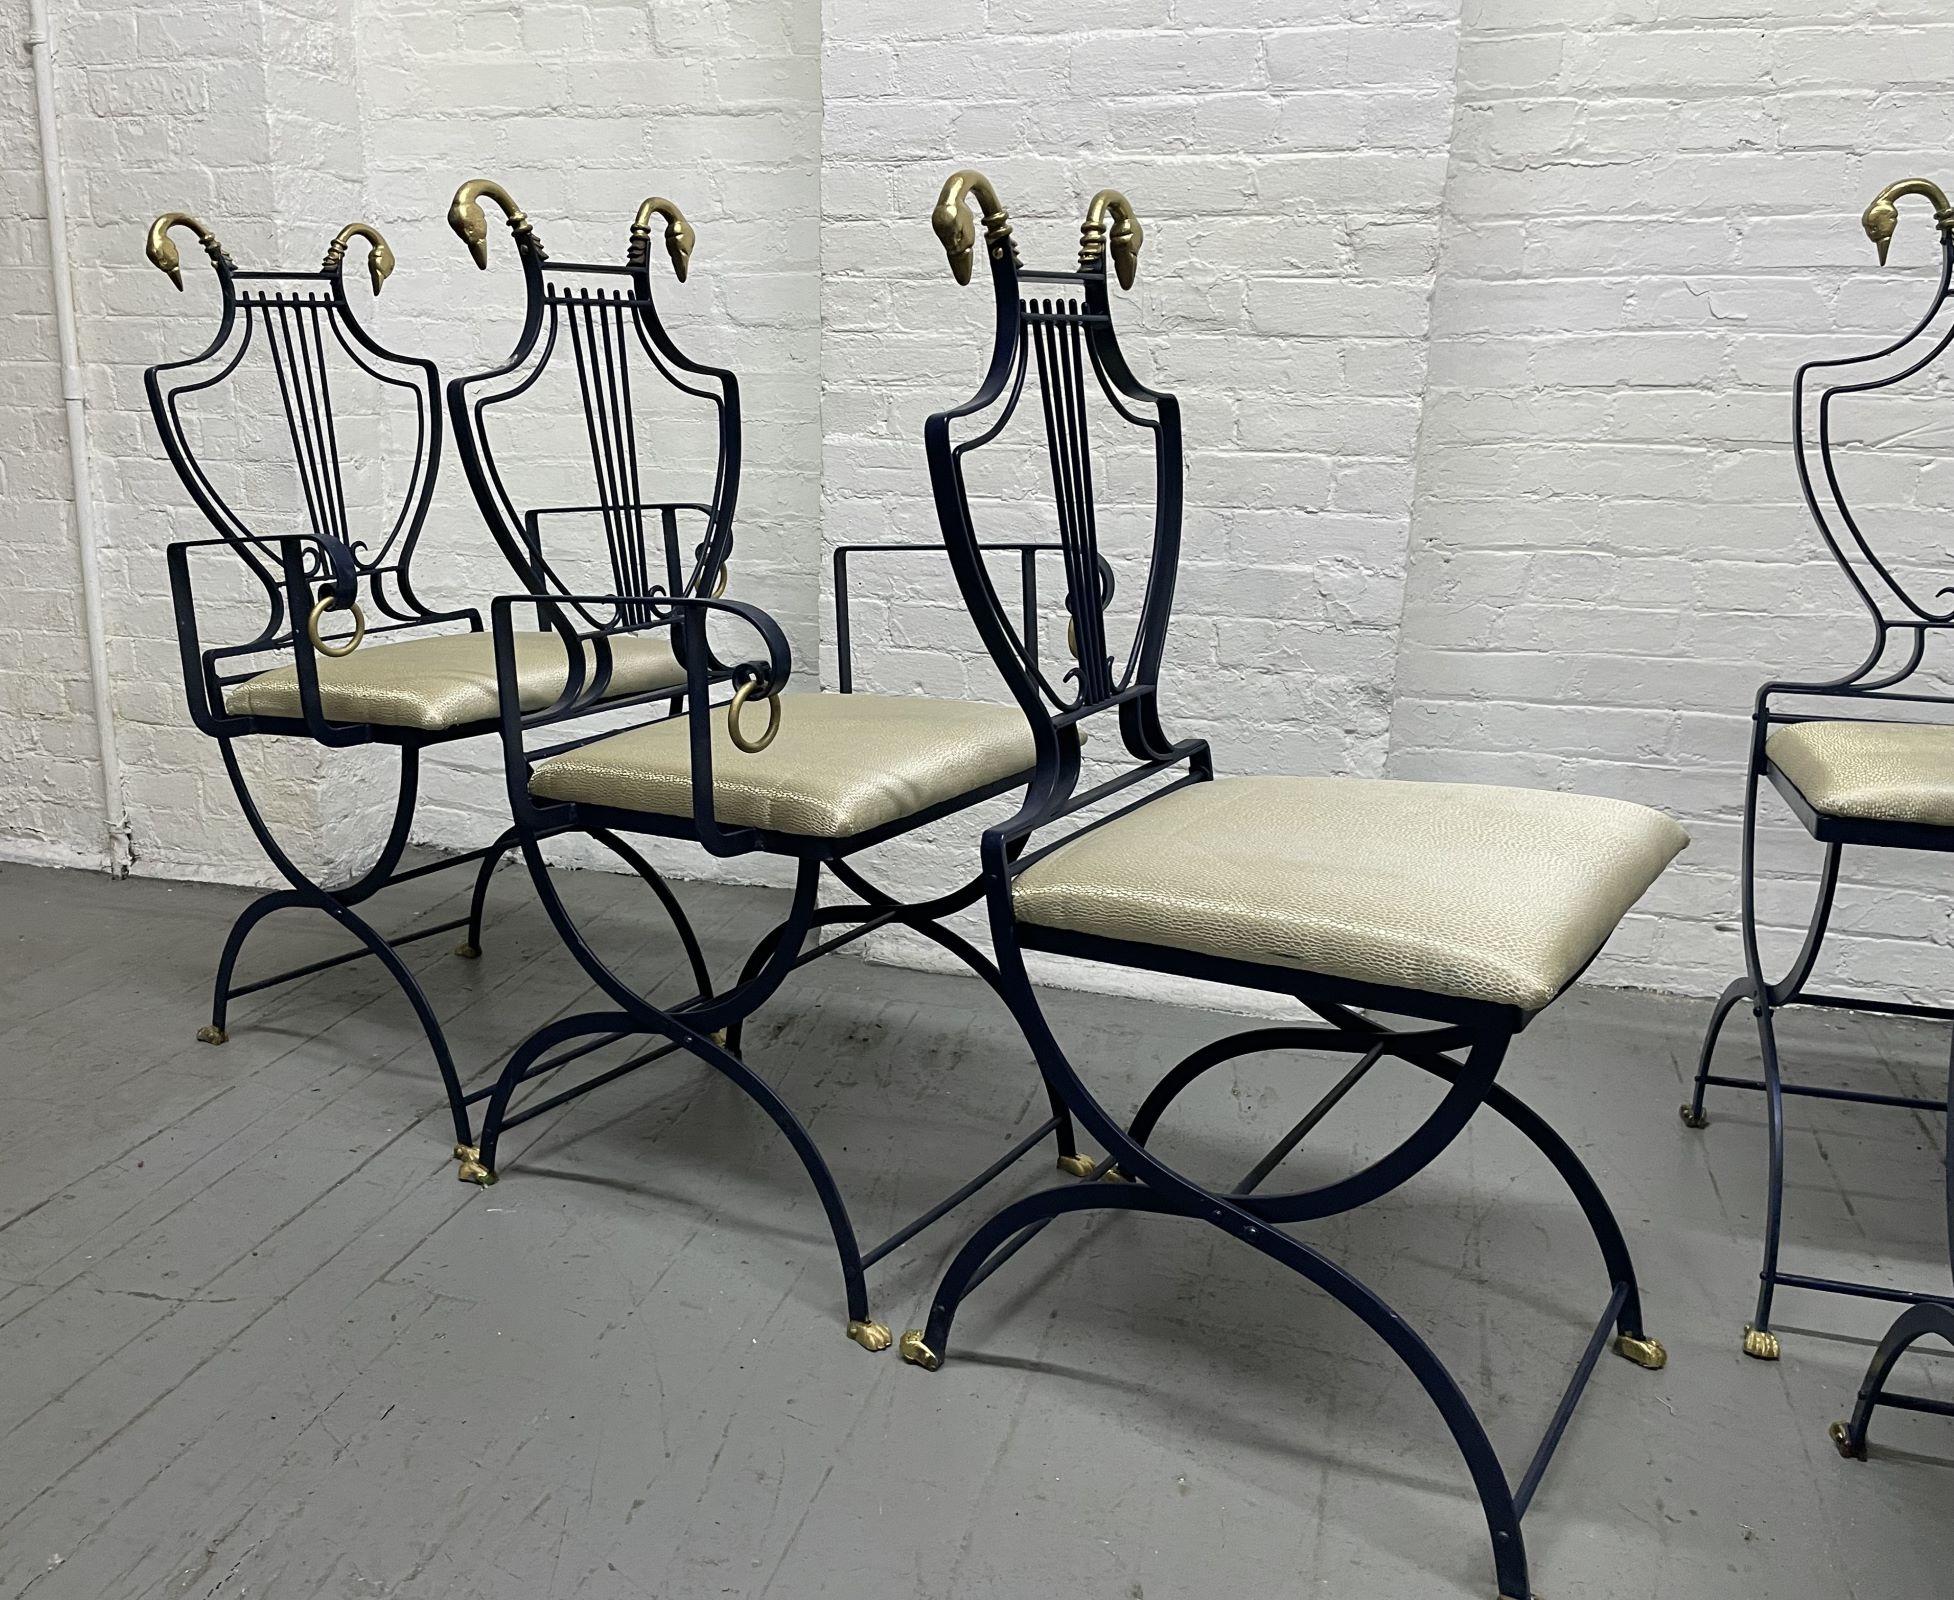 Ensemble de 6 chaises à dossier cygne et lyre de la Maison Maison Jansen. Les chaises pliantes sont surmontées de cygnes en laiton de chaque côté. Les châssis des chaises sont bleu foncé et les pieds griffus. Deux des chaises ont des accoudoirs. Les